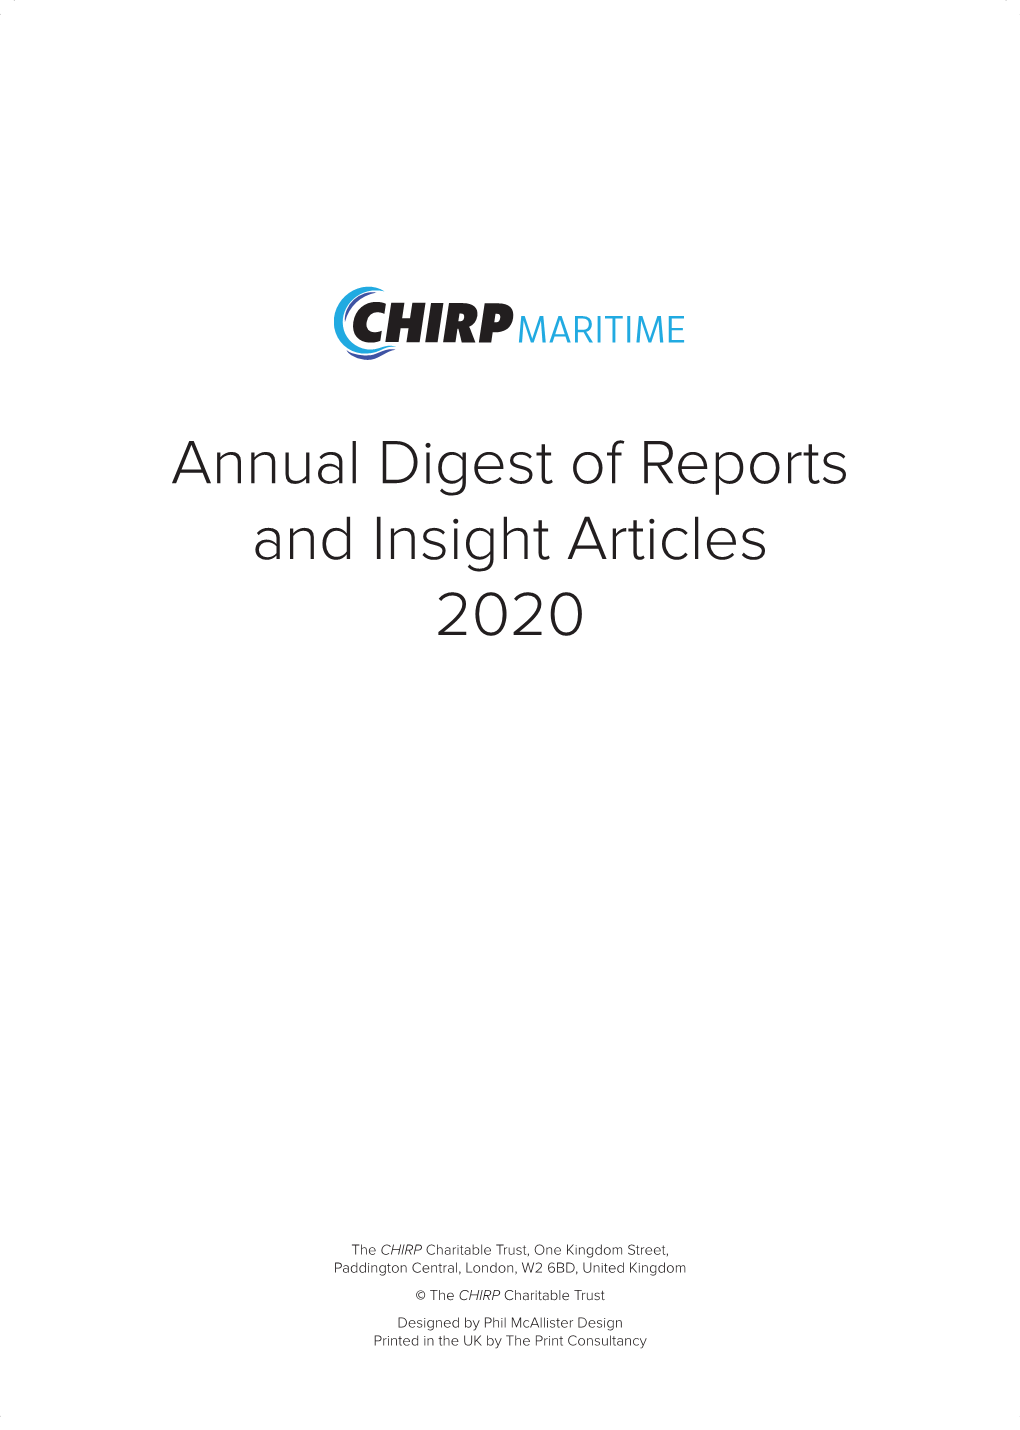 CHIRP Maritime Annual Digest 2020